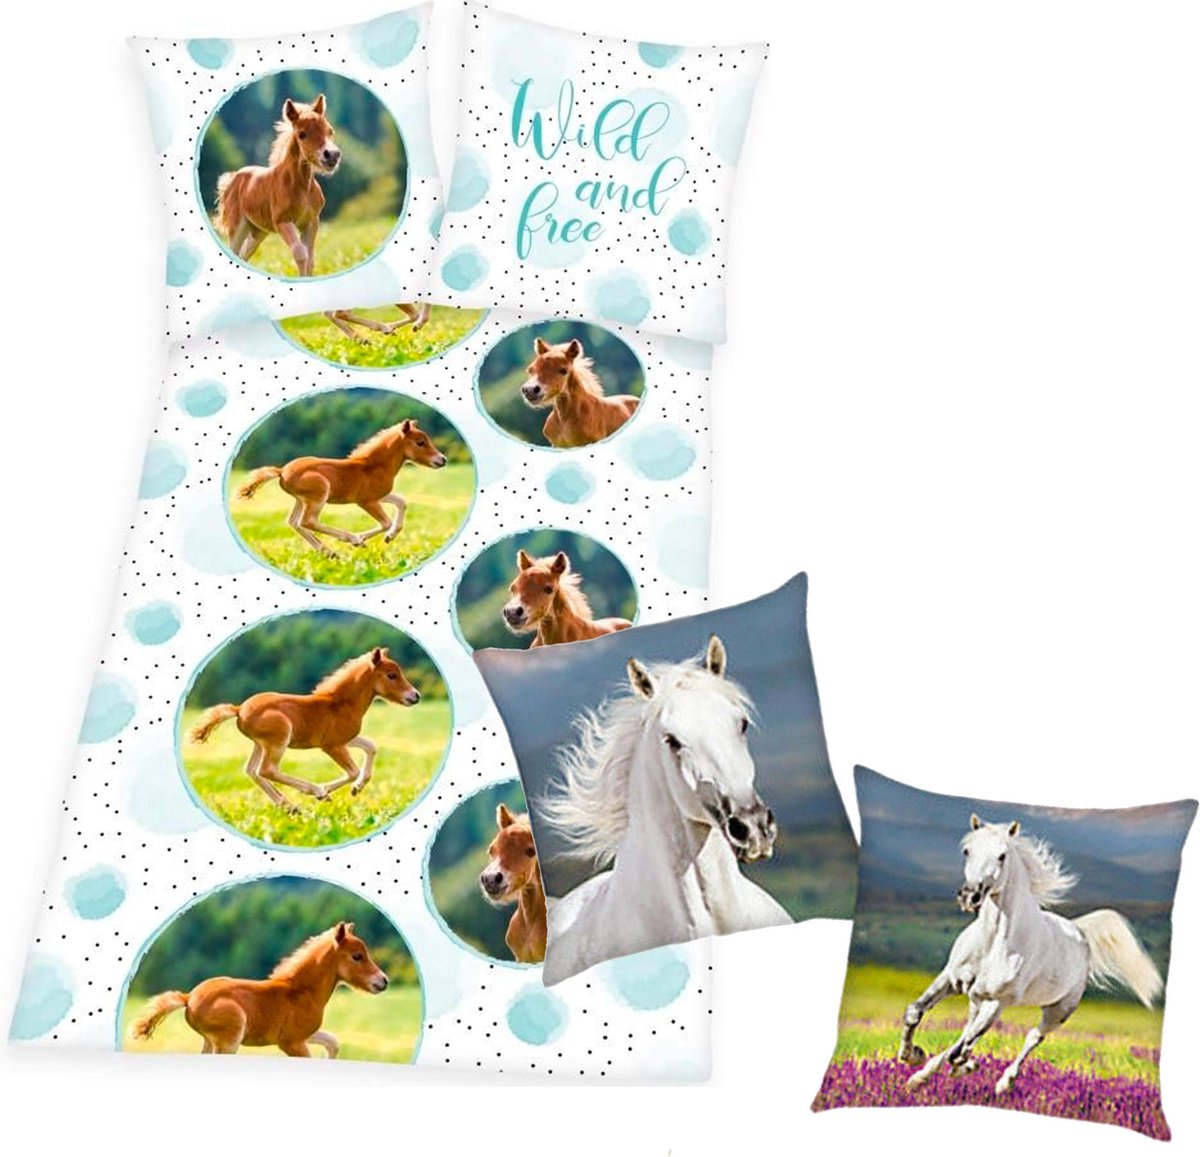 Dekbedovertrek Veulen, 135 x 200 cm, dekbed Paard, eenpersoons - incl. sierkussen wit paard paard 40x40 cm